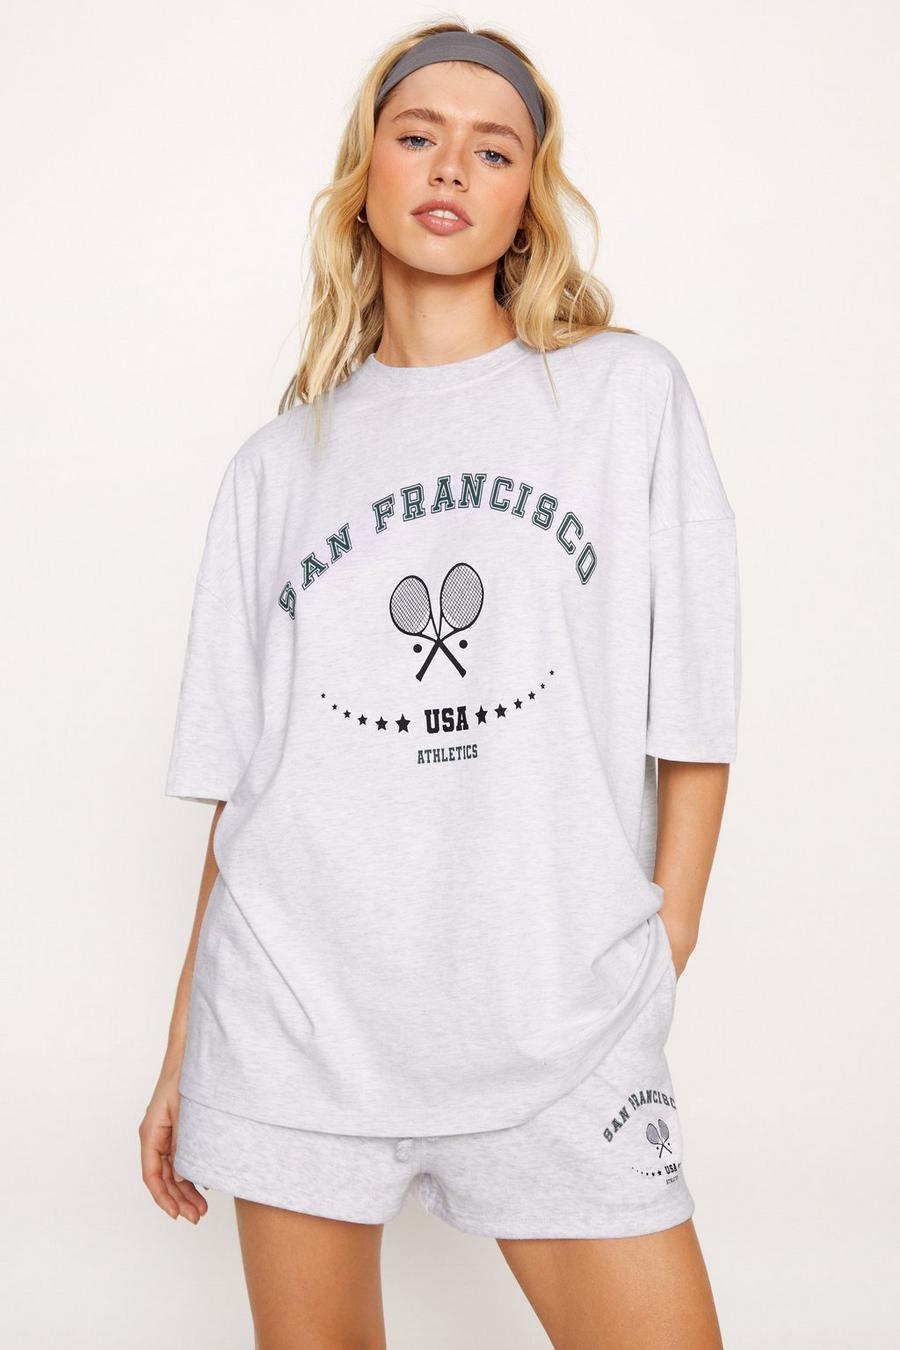 San Francisco Slogan T-shirt And Shorts Two Piece Set